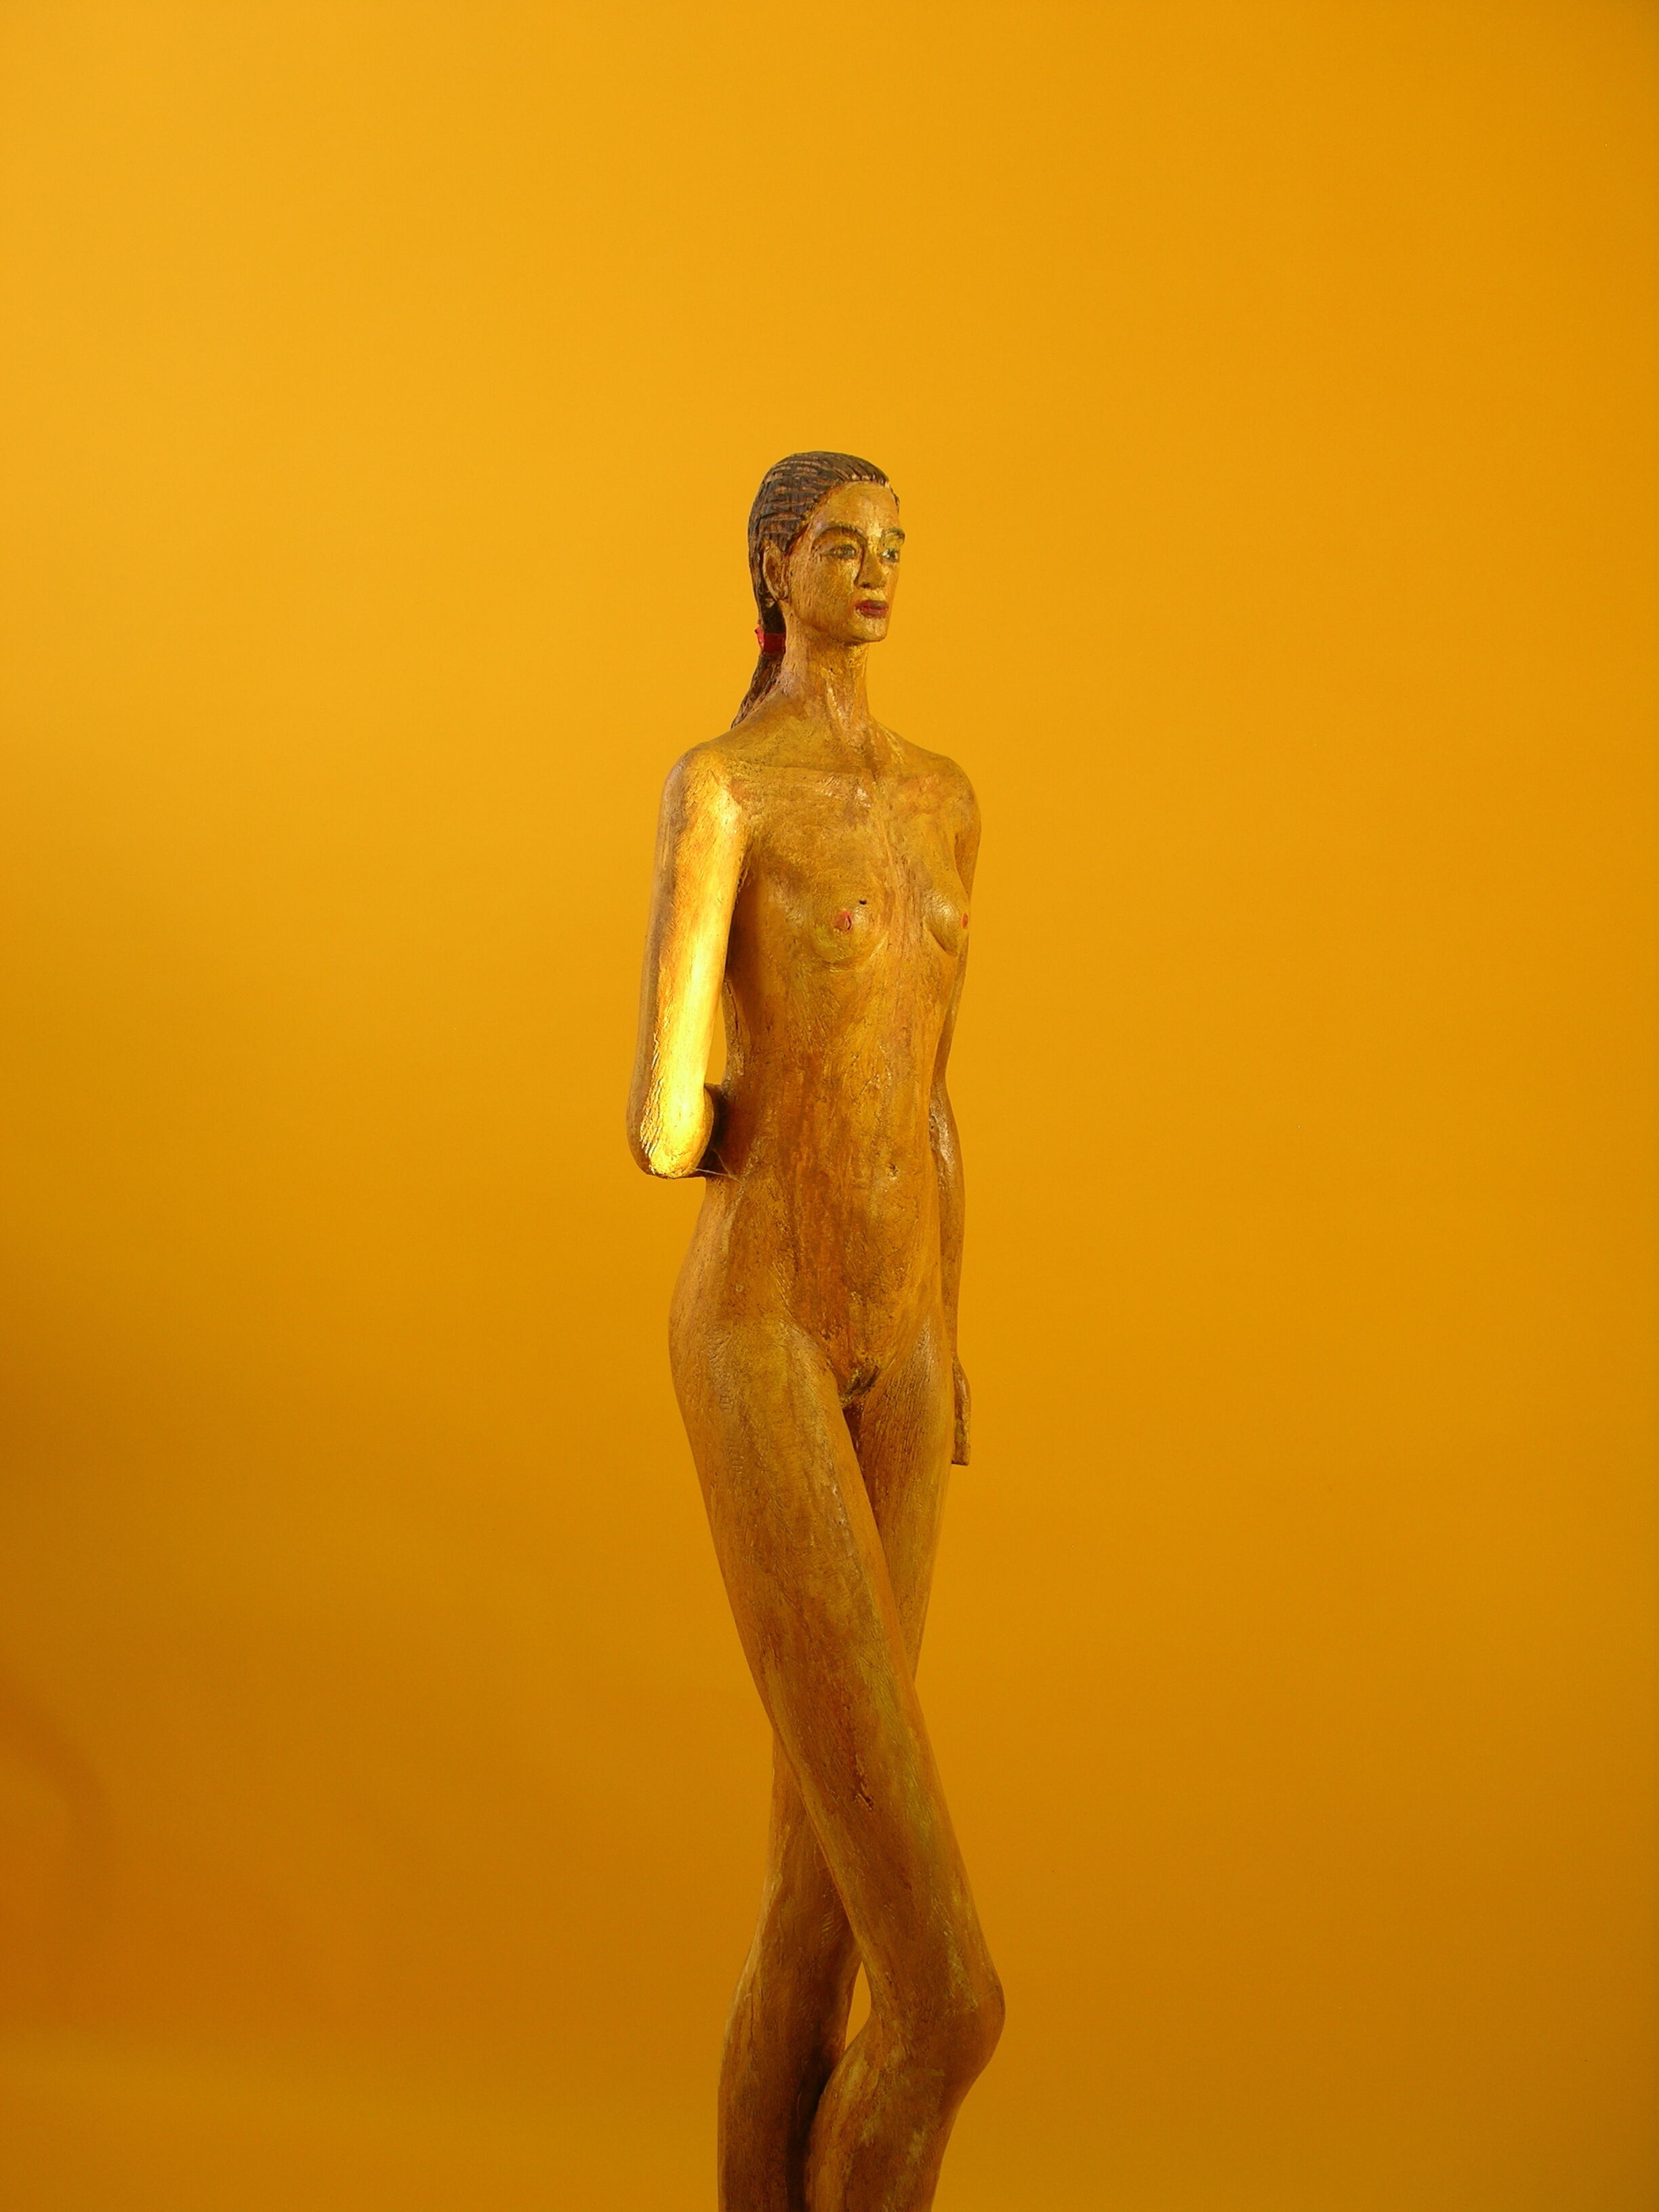 Sculpture "Long leg pair" (2015)